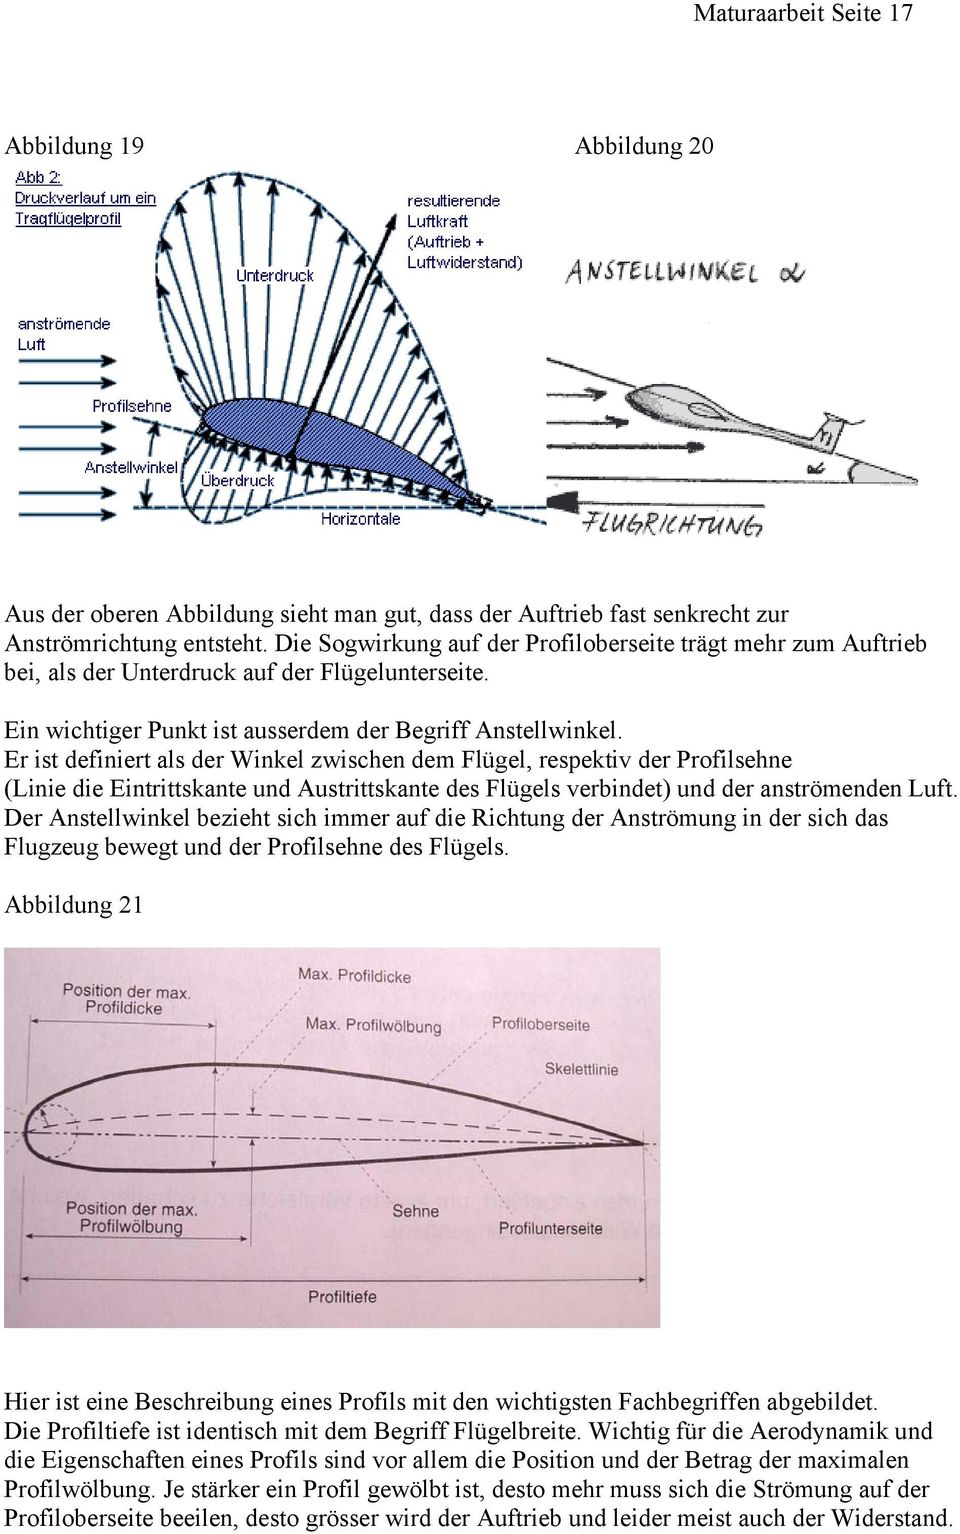 Er ist definiert als der Winkel zwischen dem Flügel, respektiv der Profilsehne (Linie die Eintrittskante und Austrittskante des Flügels verbindet) und der anströmenden Luft.